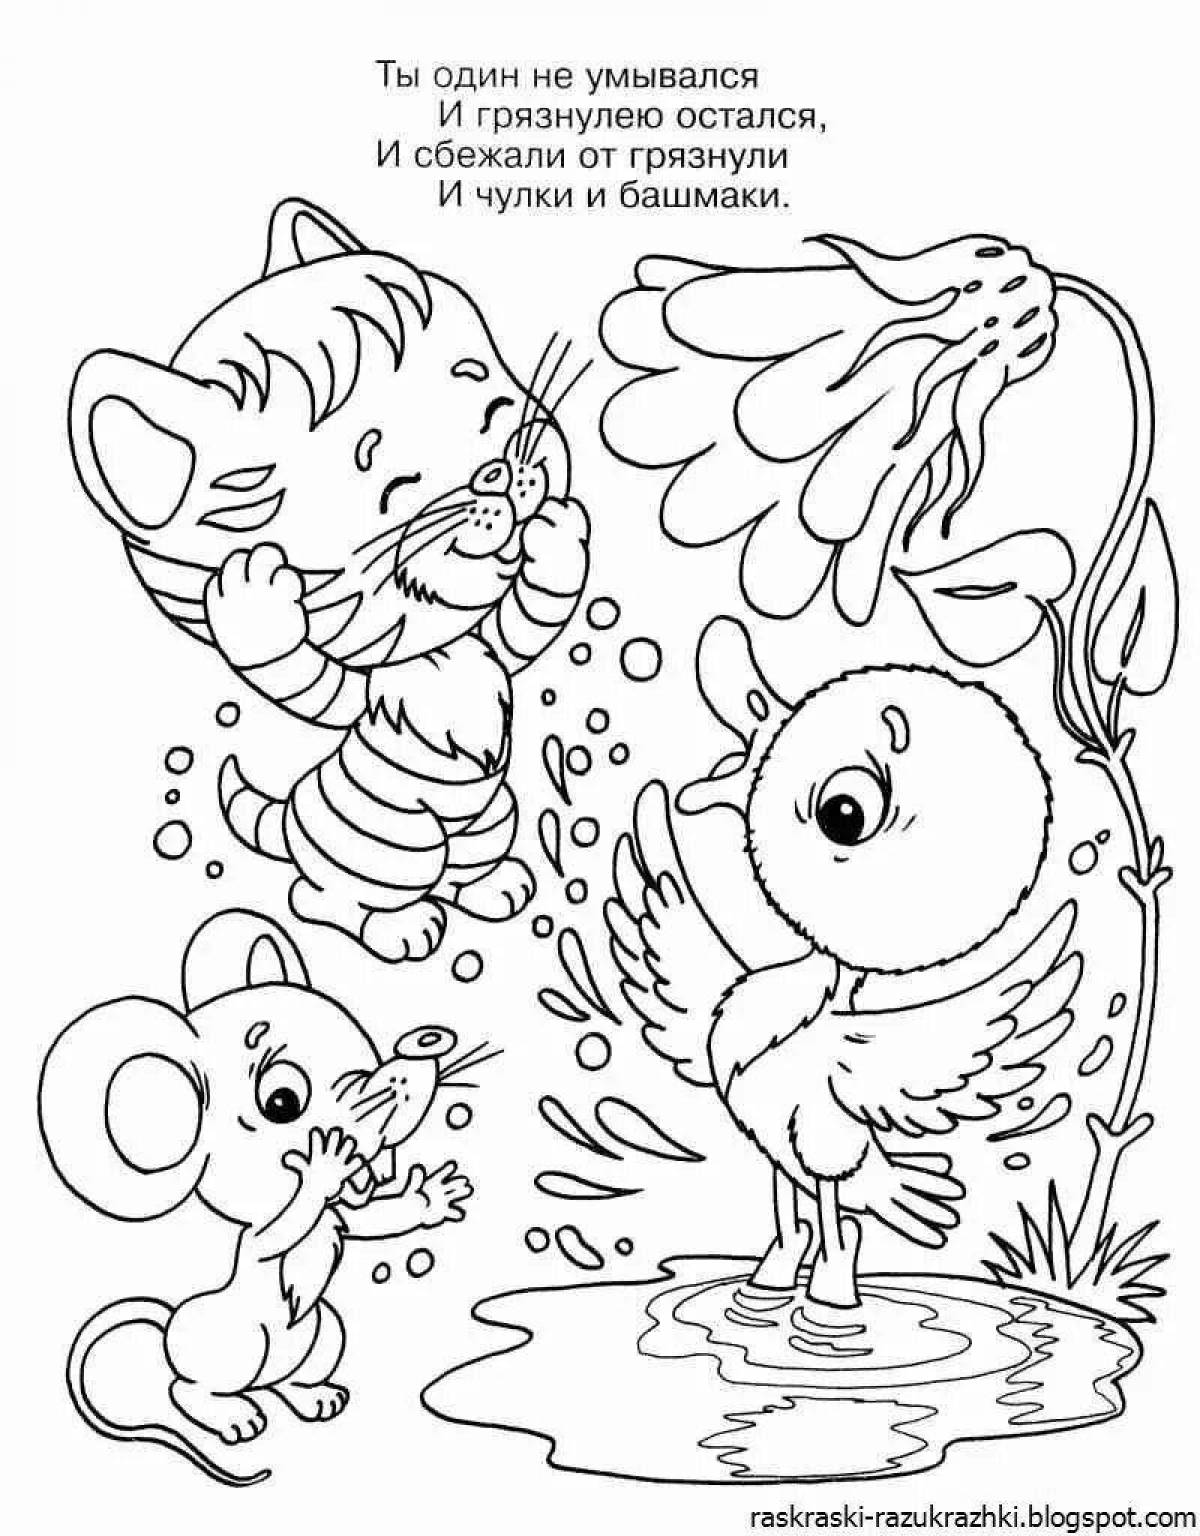 Zany Chukovsky fairy tale coloring book